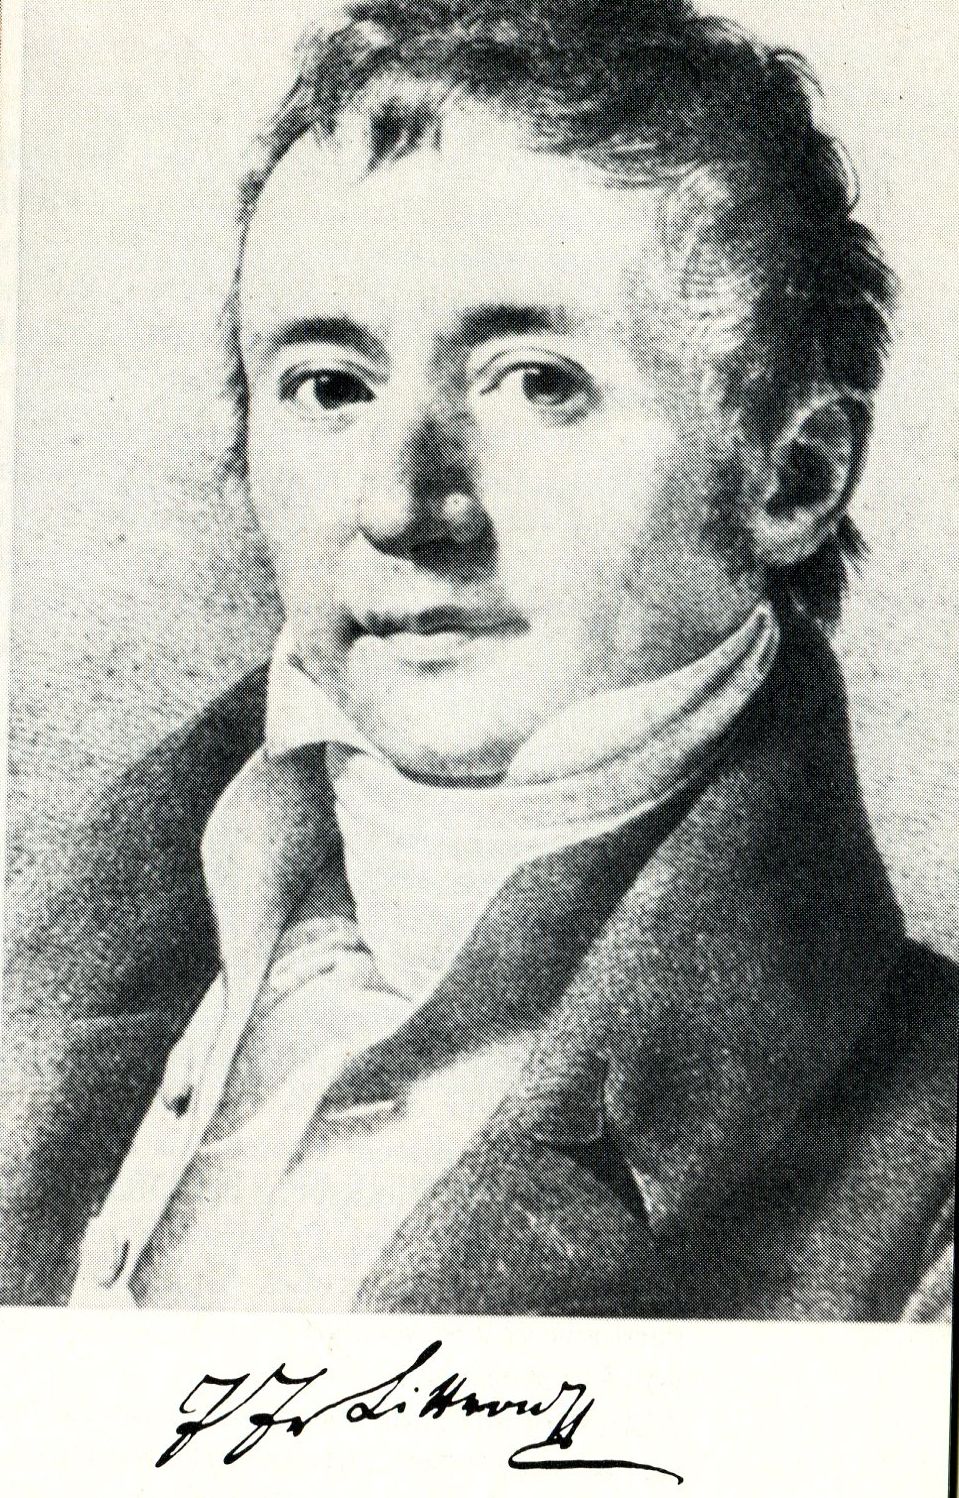 Josef Johann Littrow